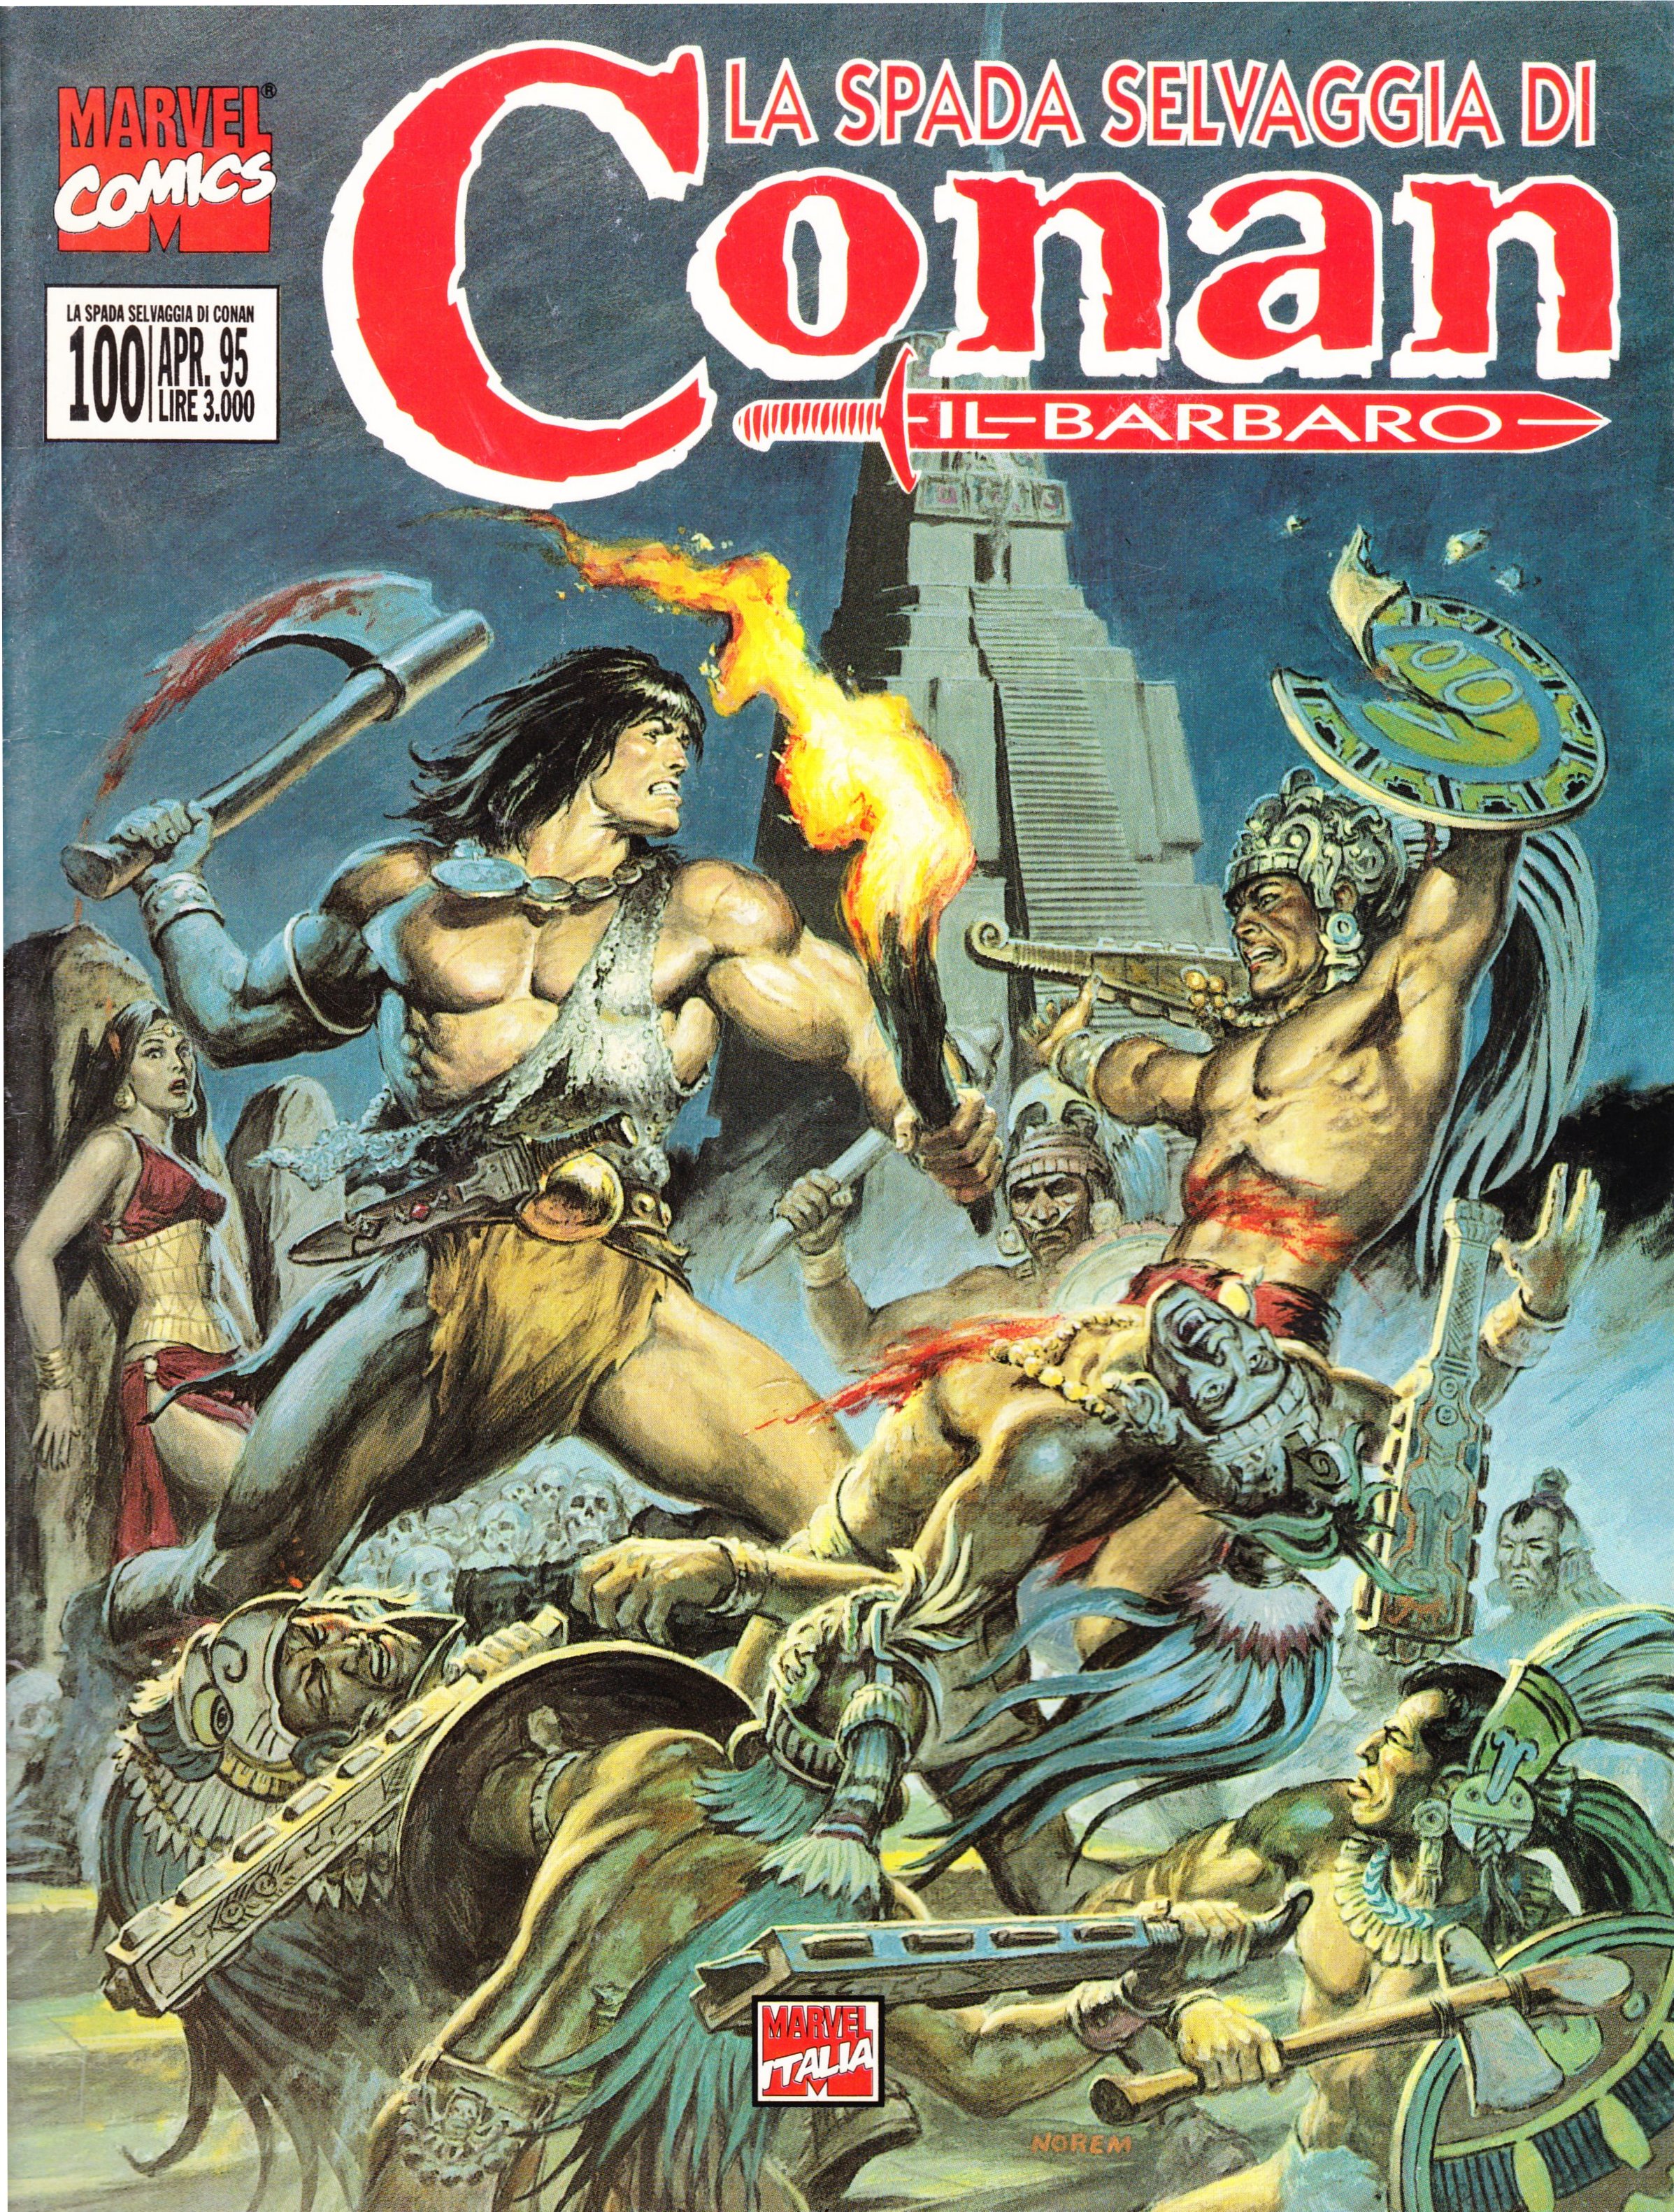 La spada selvaggia di Conan n. 100